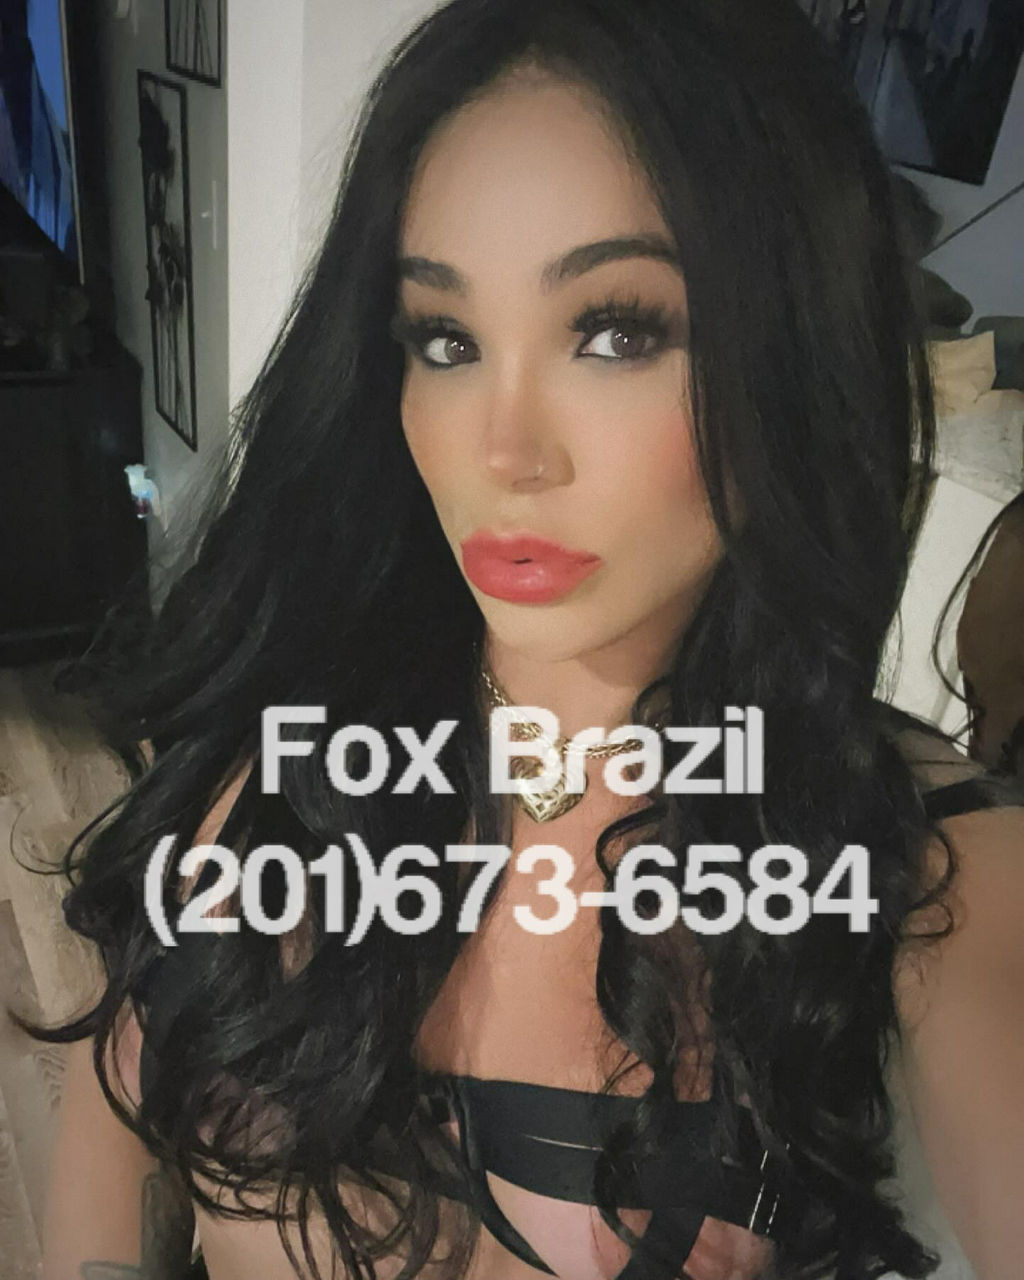 Fox Brazil Shemale Escort In Boston Ma 201 673 6584